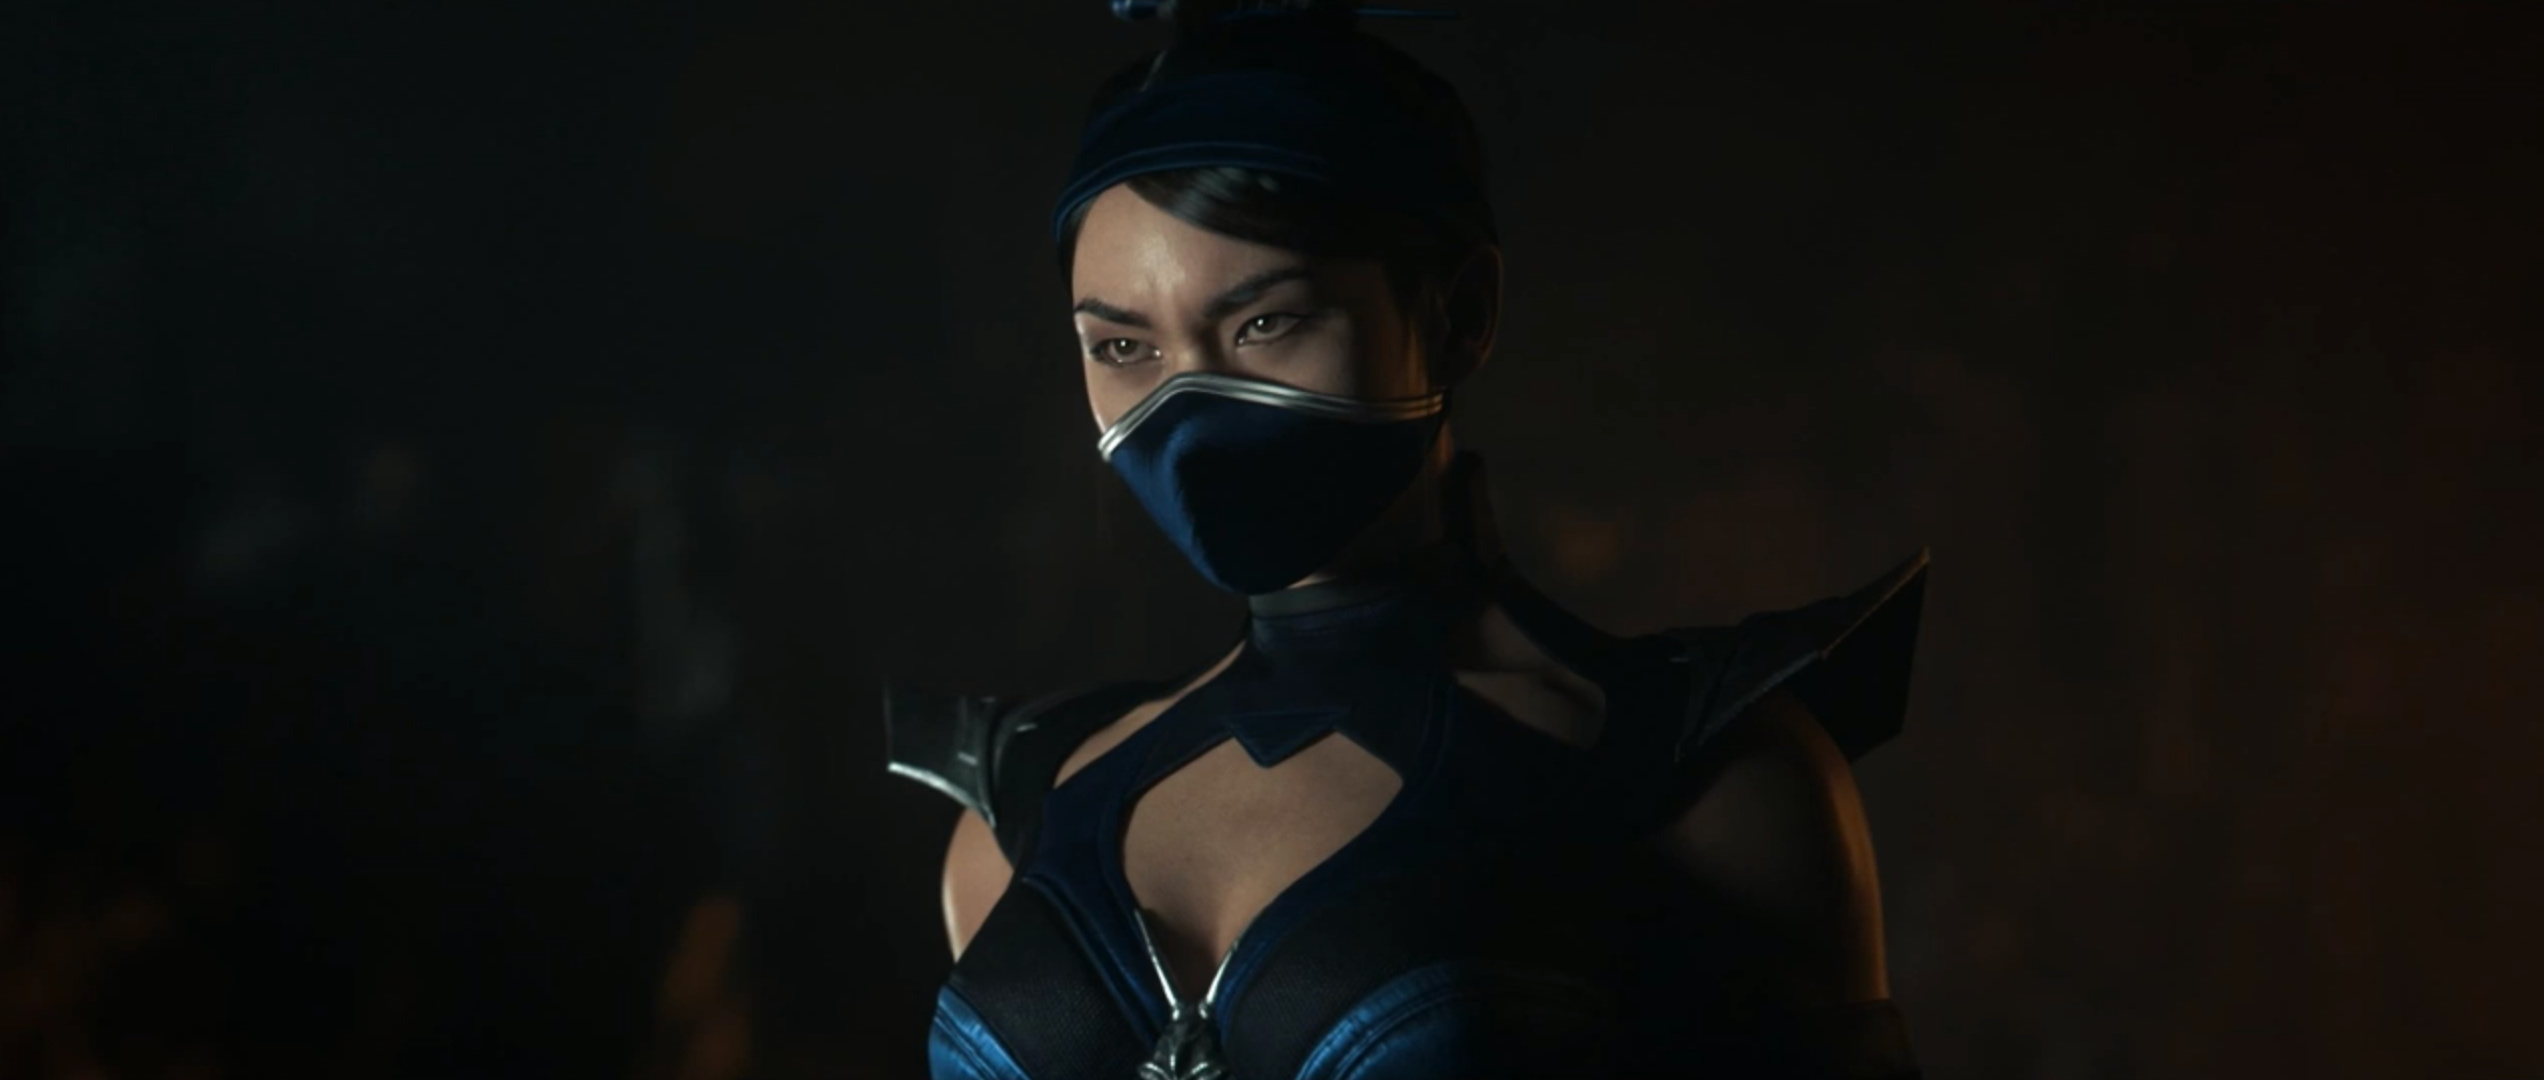 Kitana, Mortal Kombat 11, Live action trailer, Nintendo Connect, 2550x1080 Dual Screen Desktop